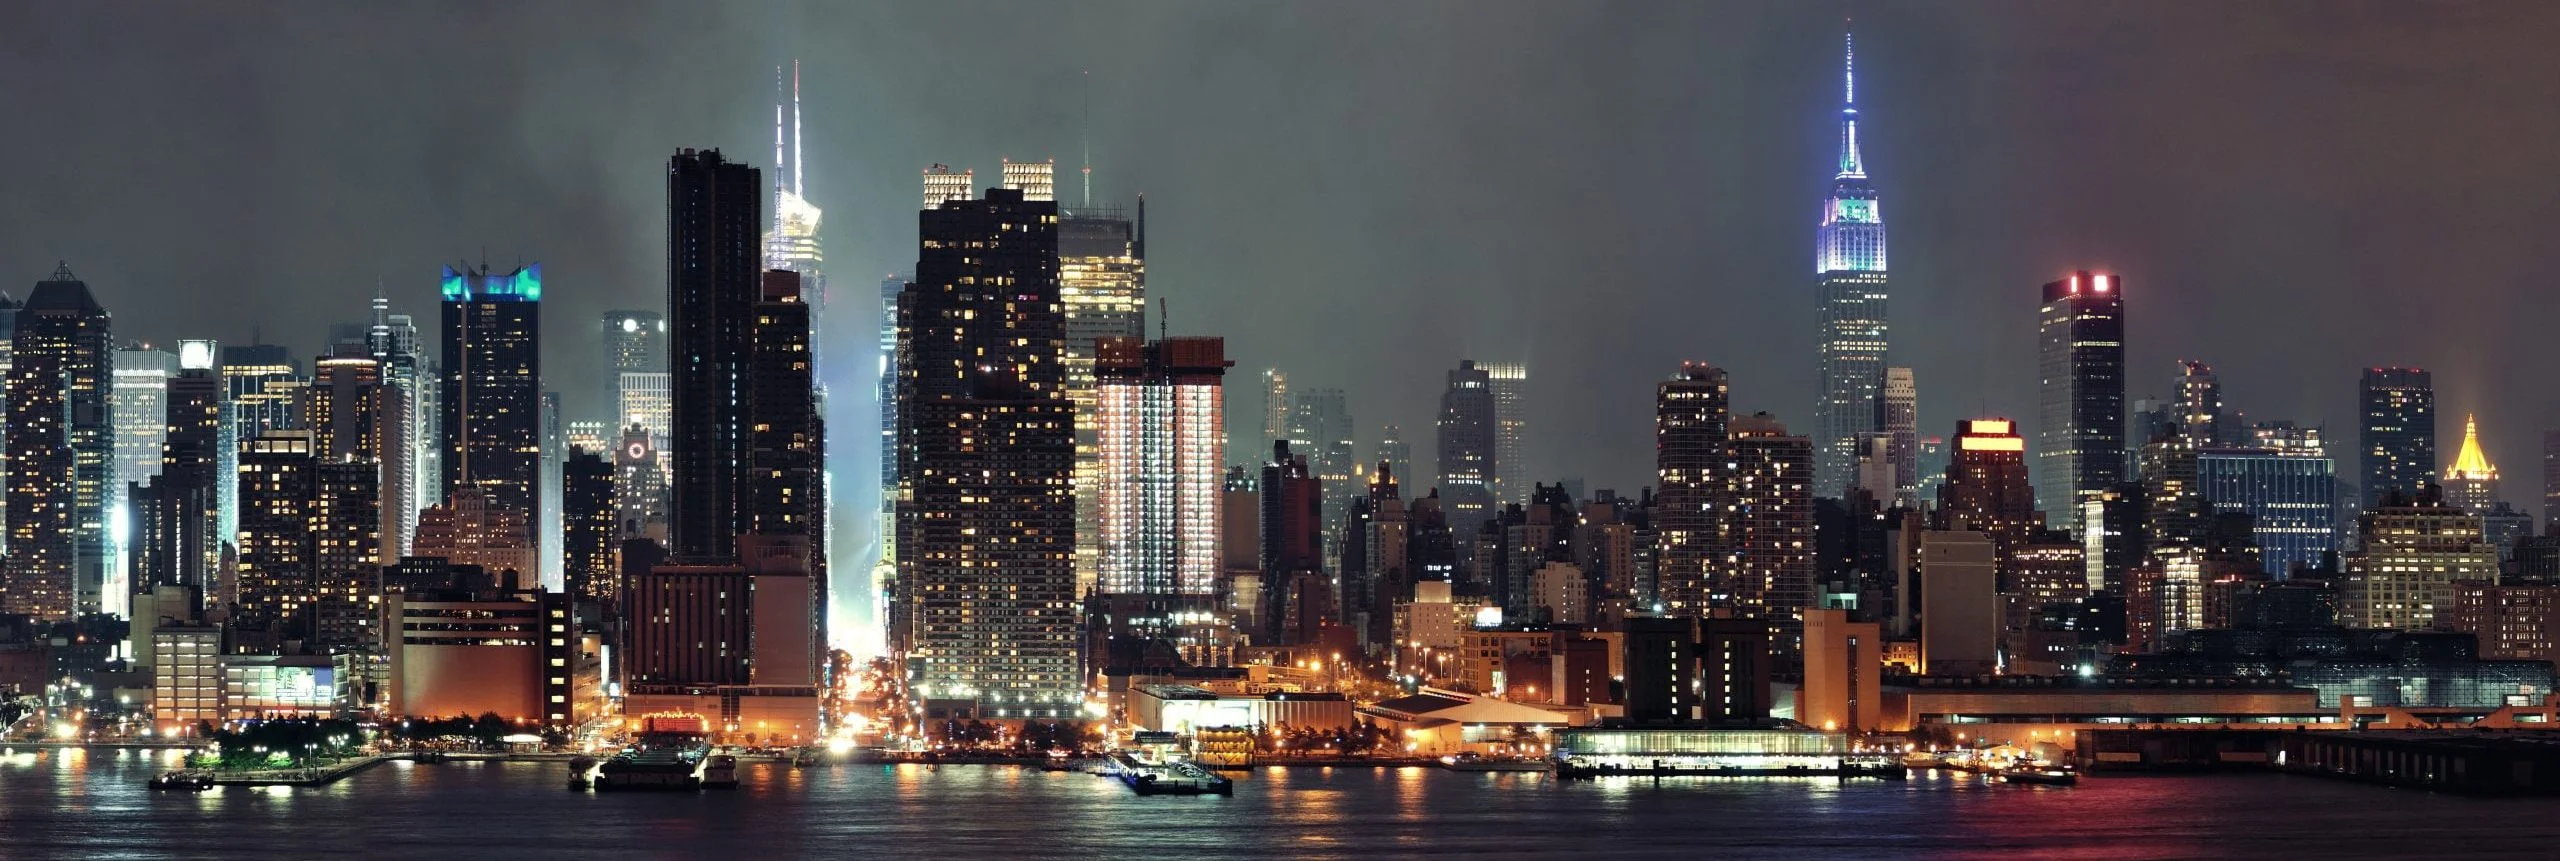 Manhattan, NY. Skyline